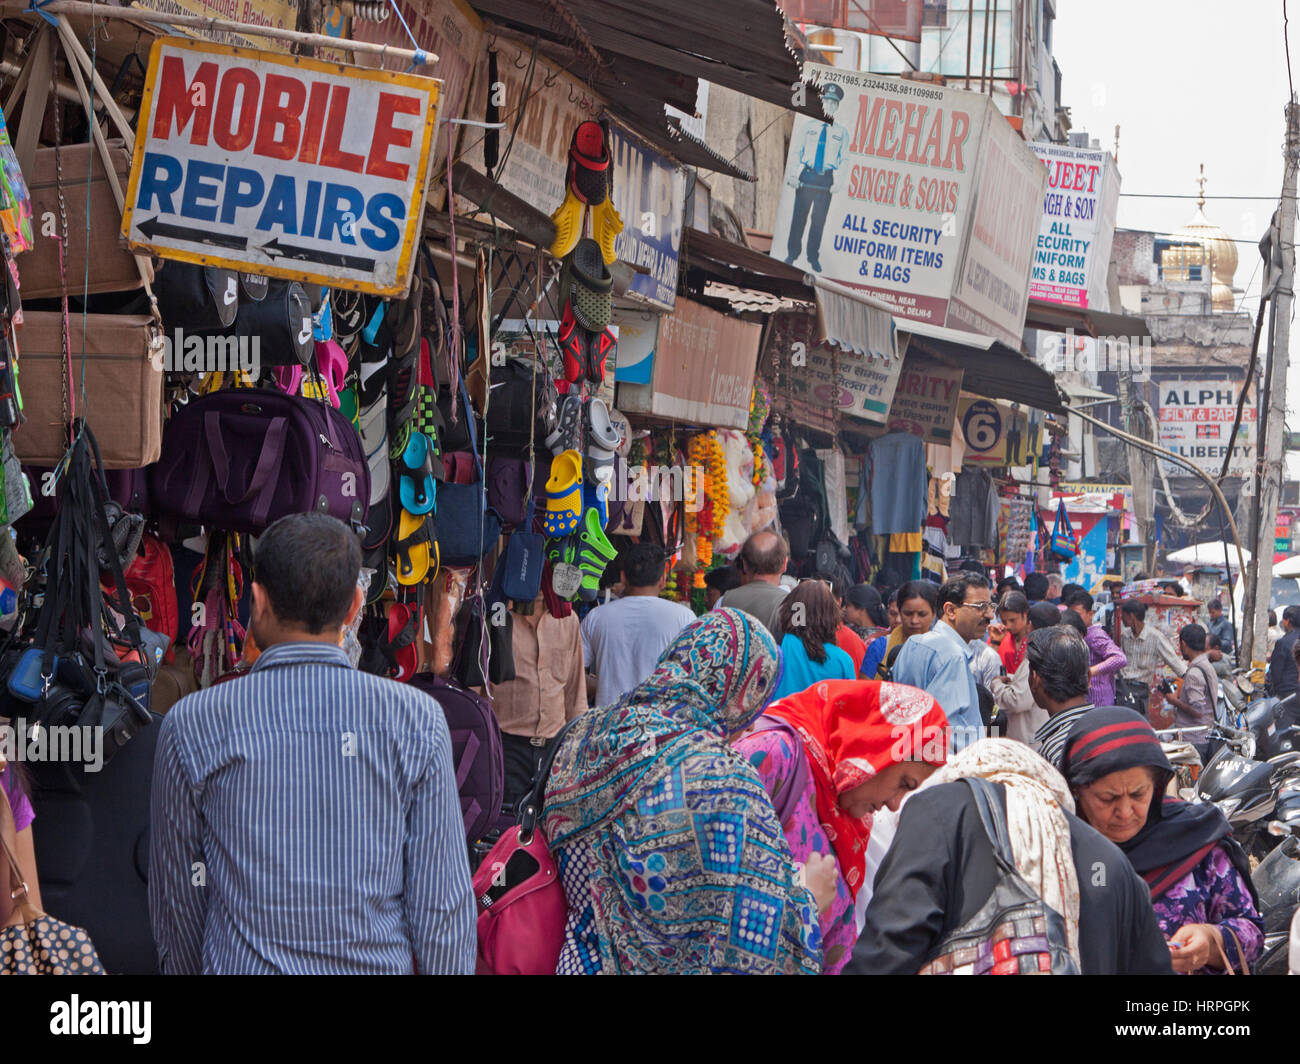 Vivace scena di strada nel cuore di Chandni Chowk bazar area nel centro della Vecchia Delhi, India Foto Stock